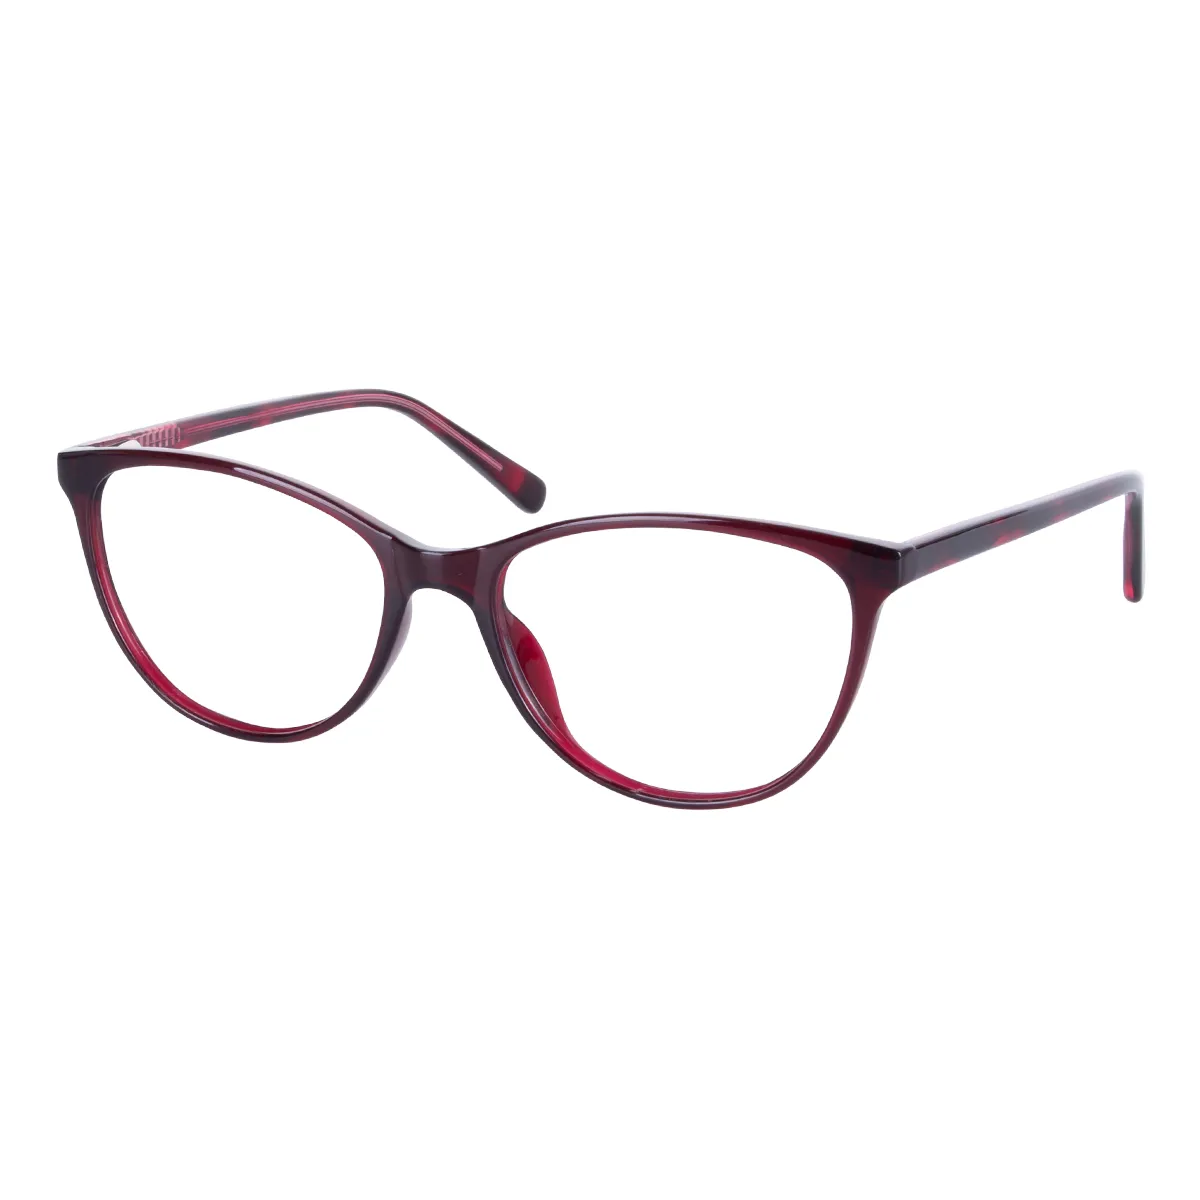 Luma - Cat-eye Red Glasses for Women